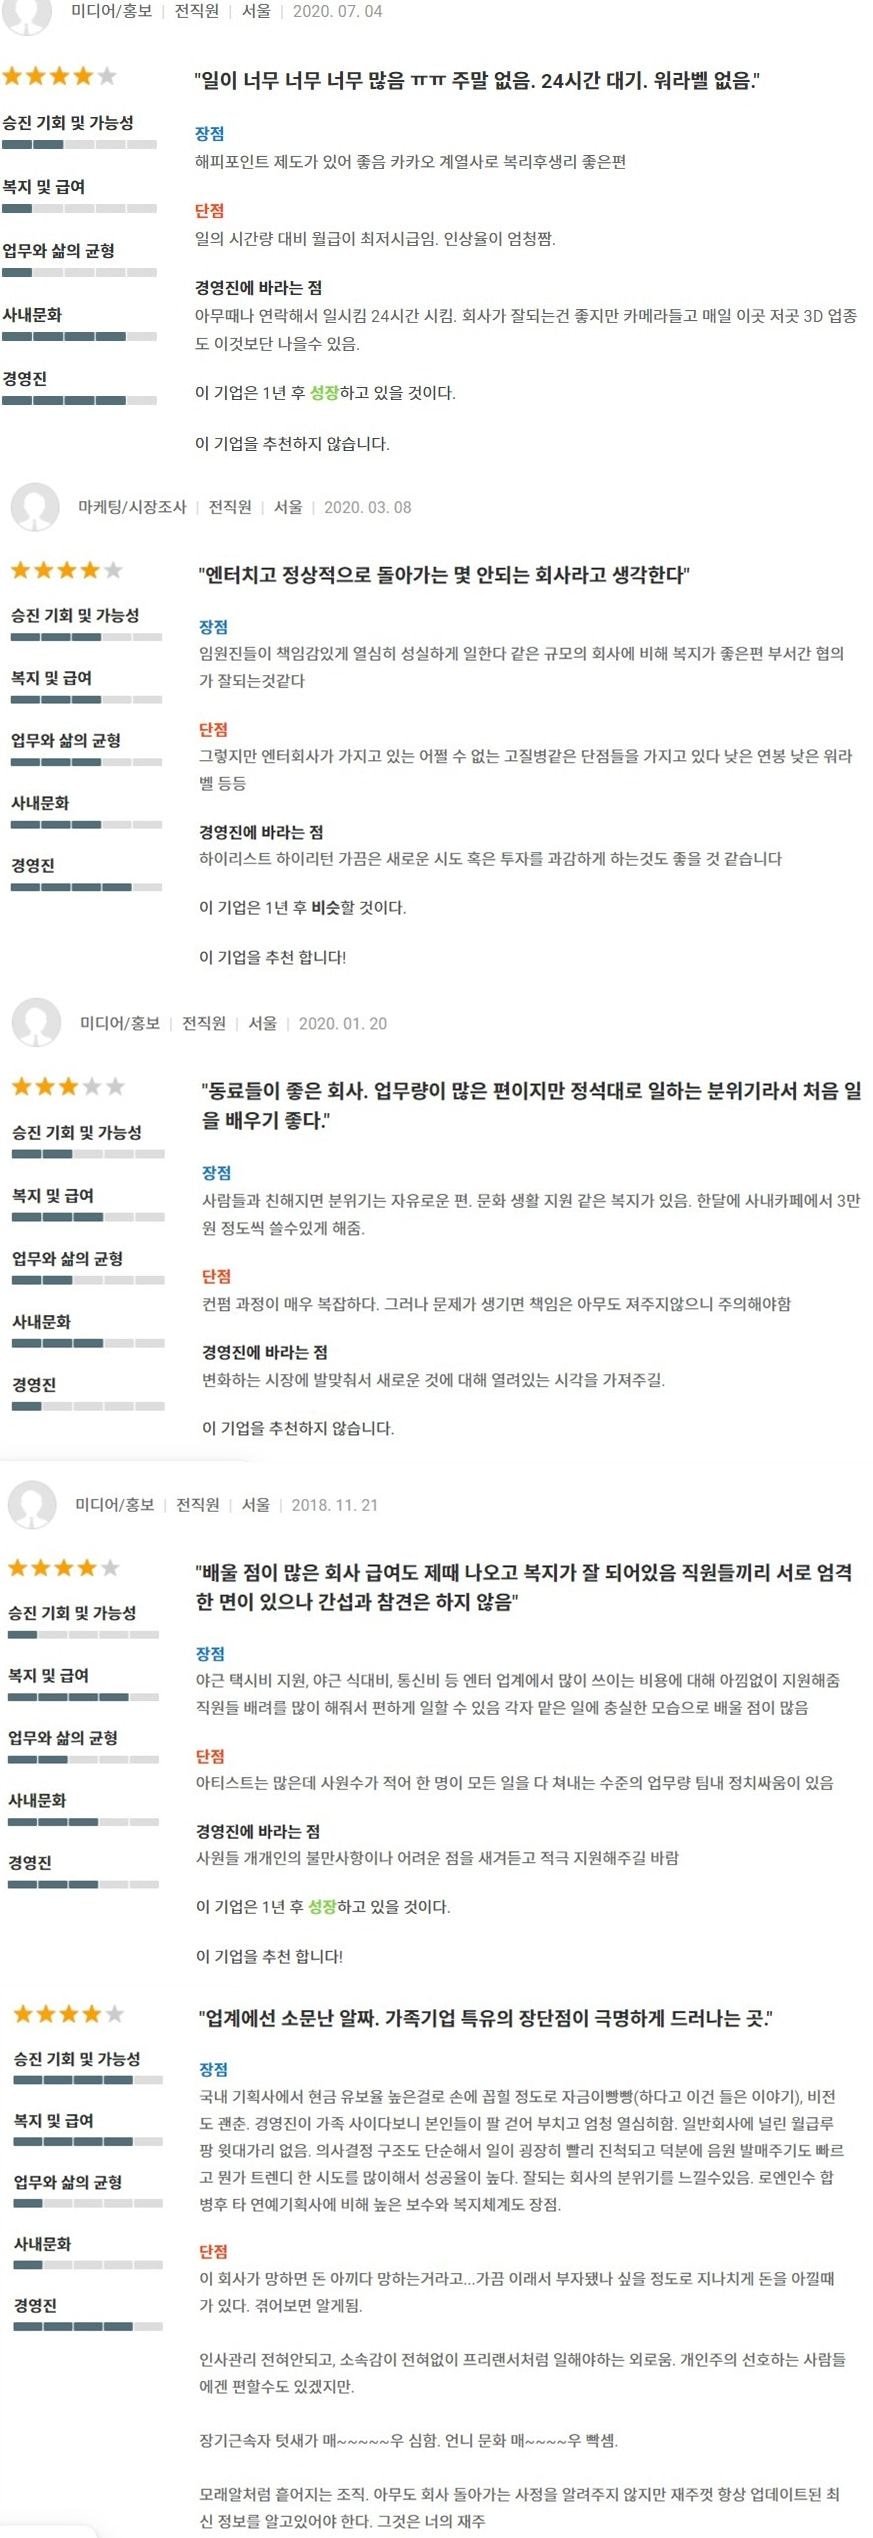 잡플래닛에 올라온 스타쉽 ent. 기업 리뷰